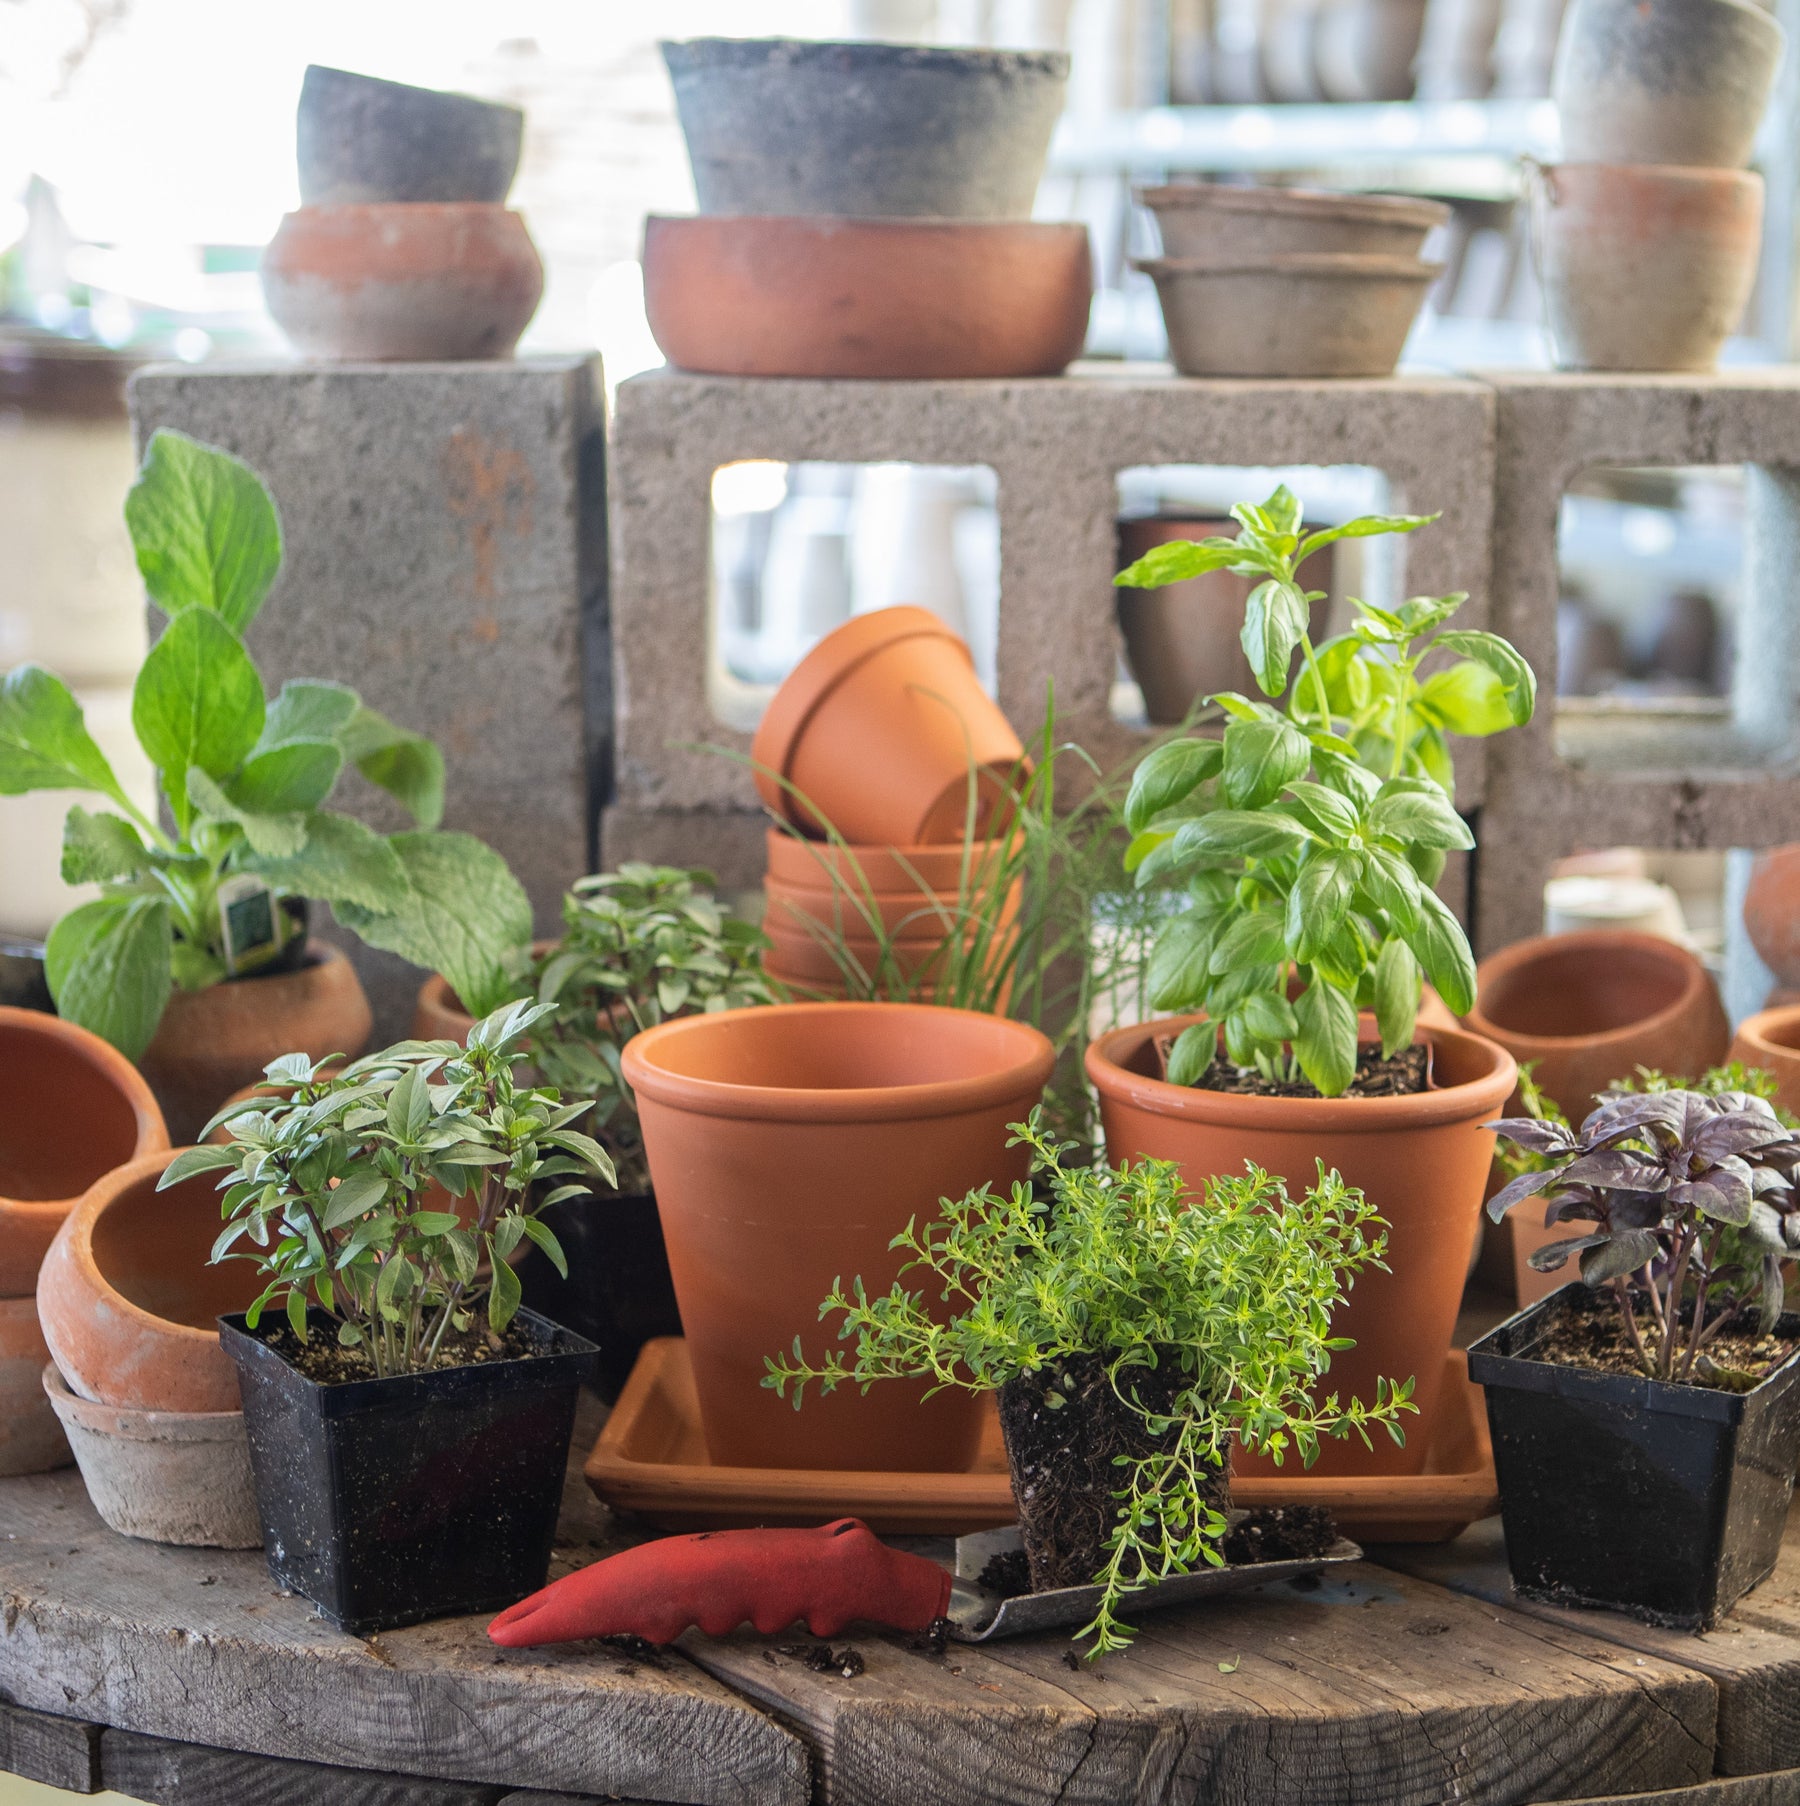 Herb Garden in Terracotta Pots